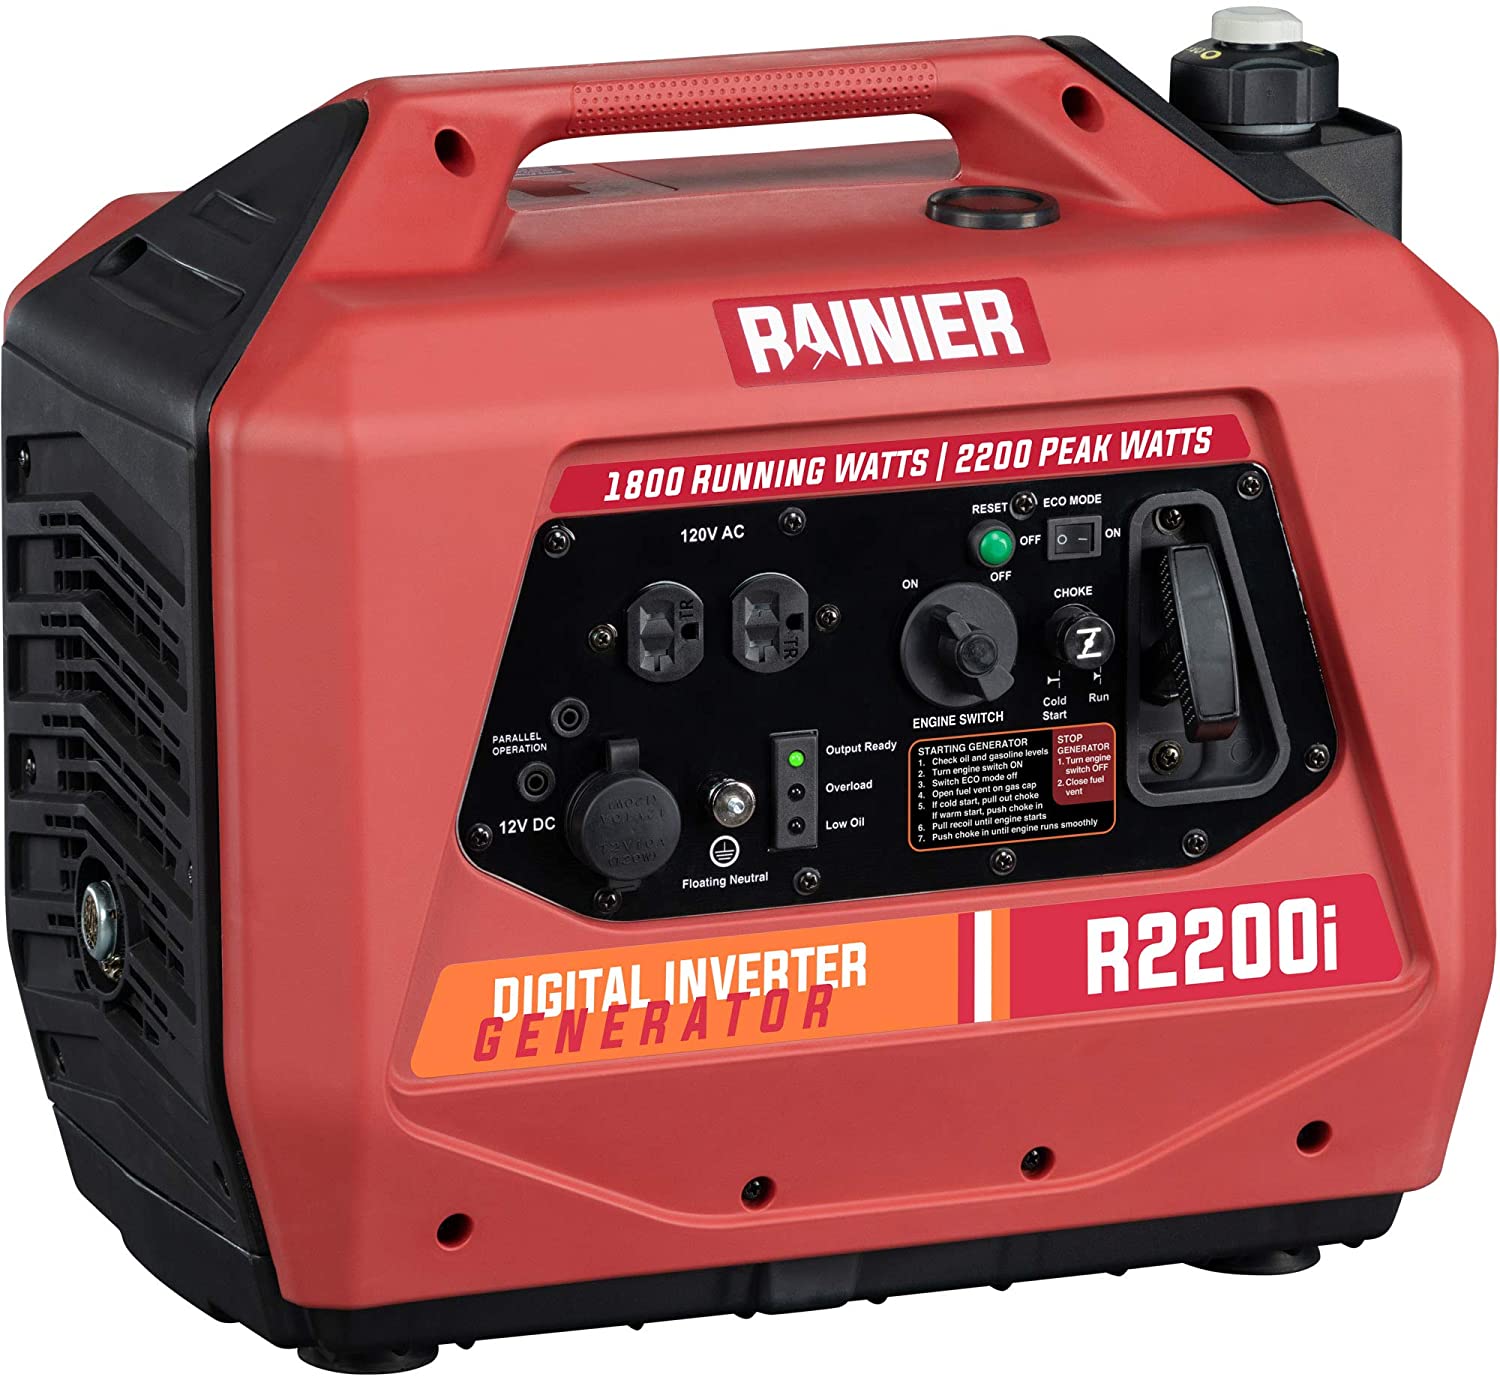 Rainier_R2200i_Portable_Suitcase_Generator